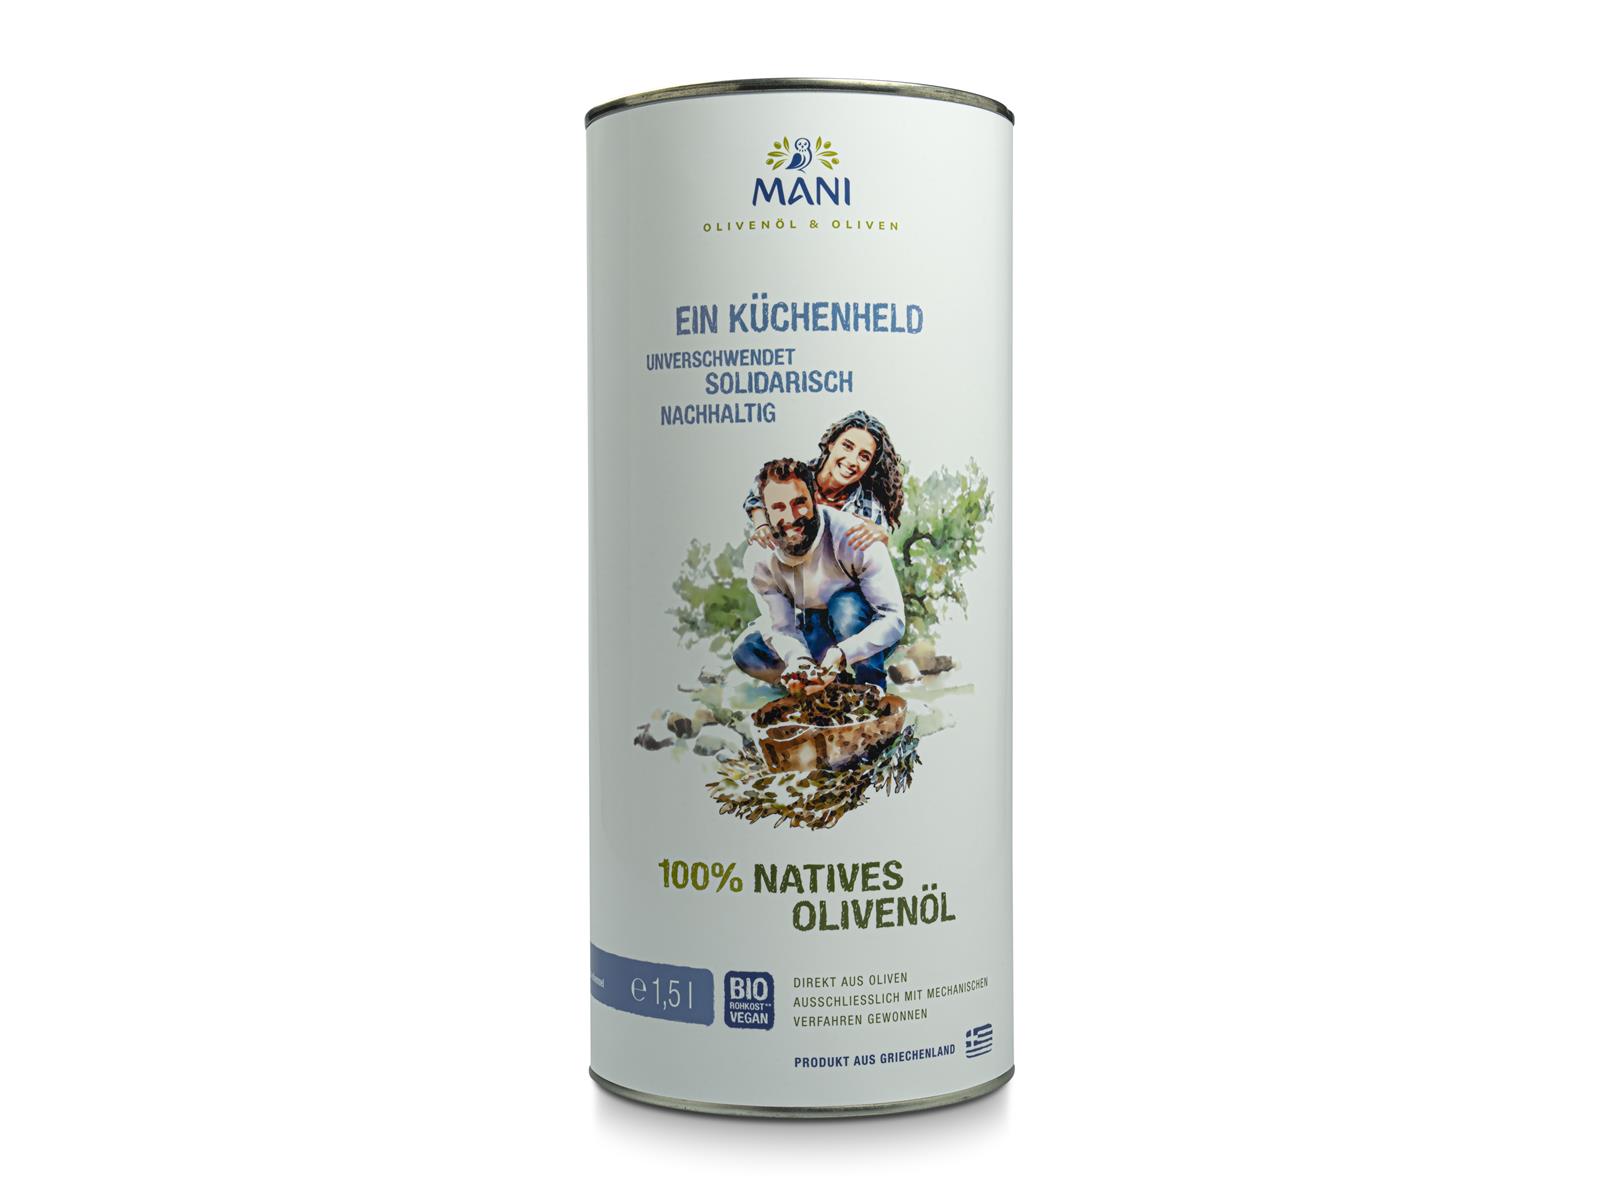 Mani Bläuel MANI, 100% natives Olivenöl 1,5 l